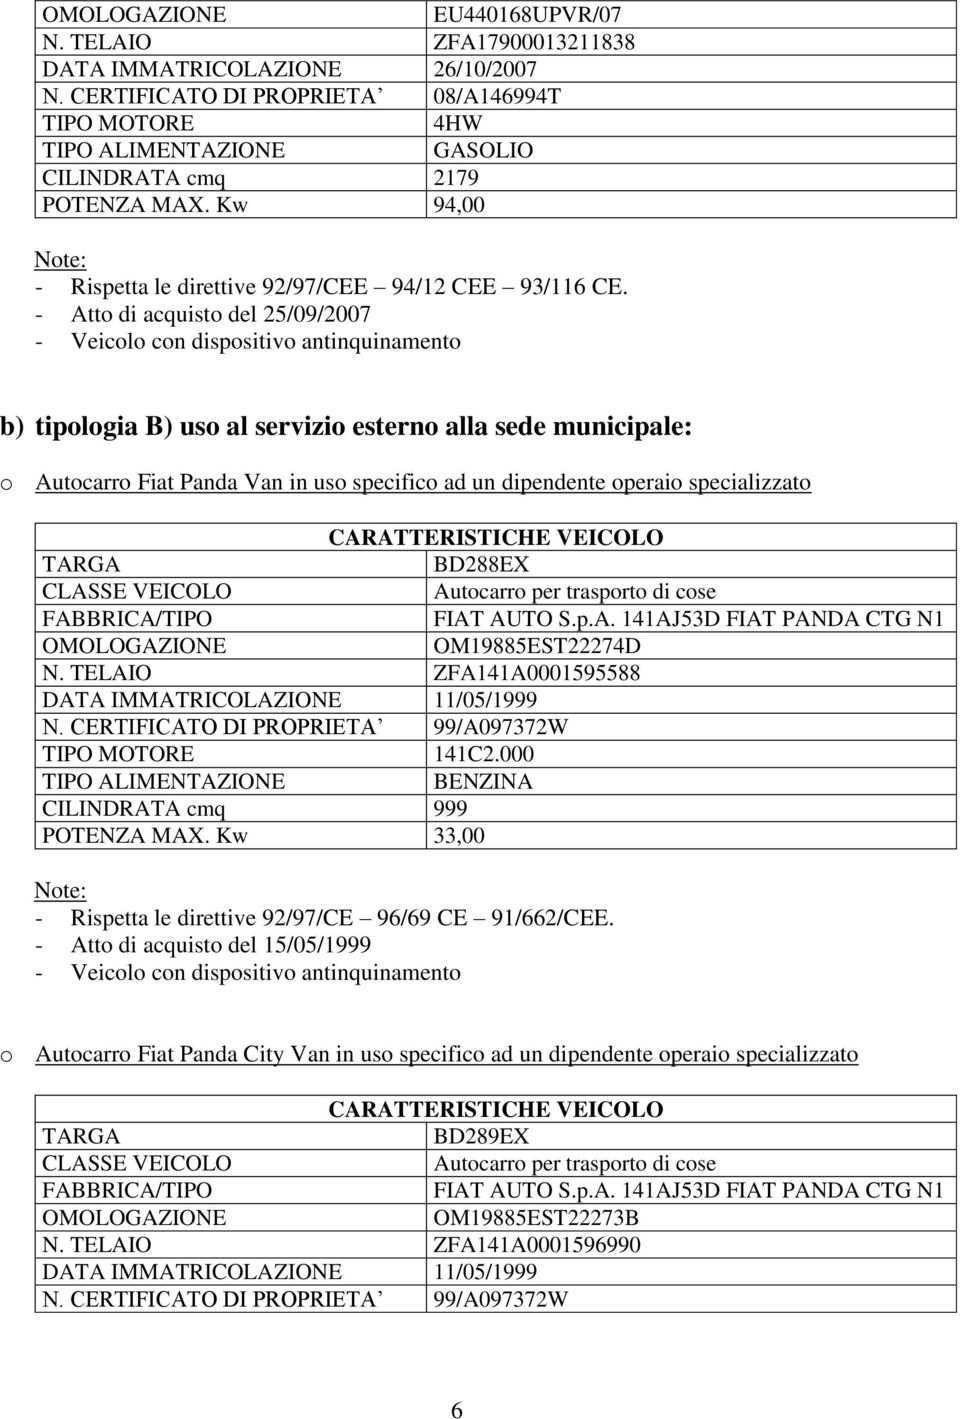 - Atto di acquisto del 25/09/2007 b) tipologia B) uso al servizio esterno alla sede municipale: o Autocarro Fiat Panda Van in uso specifico ad un dipendente operaio specializzato BD288EX Autocarro